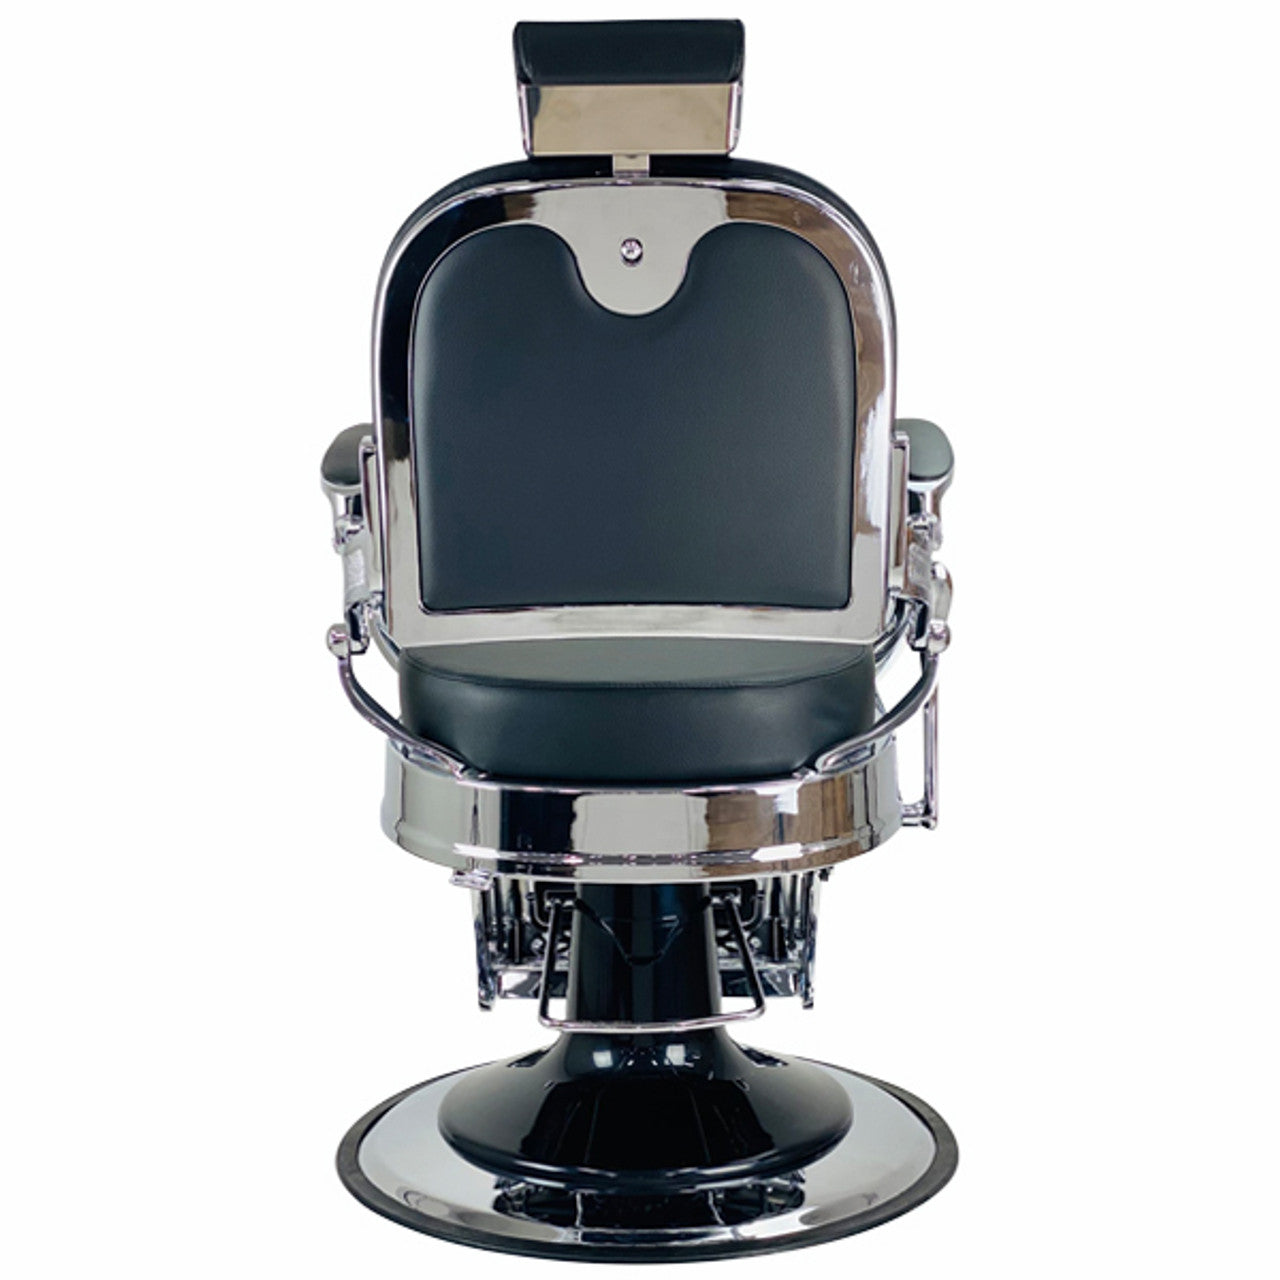 Joiken Havana Barber Chair - Black & Chrome